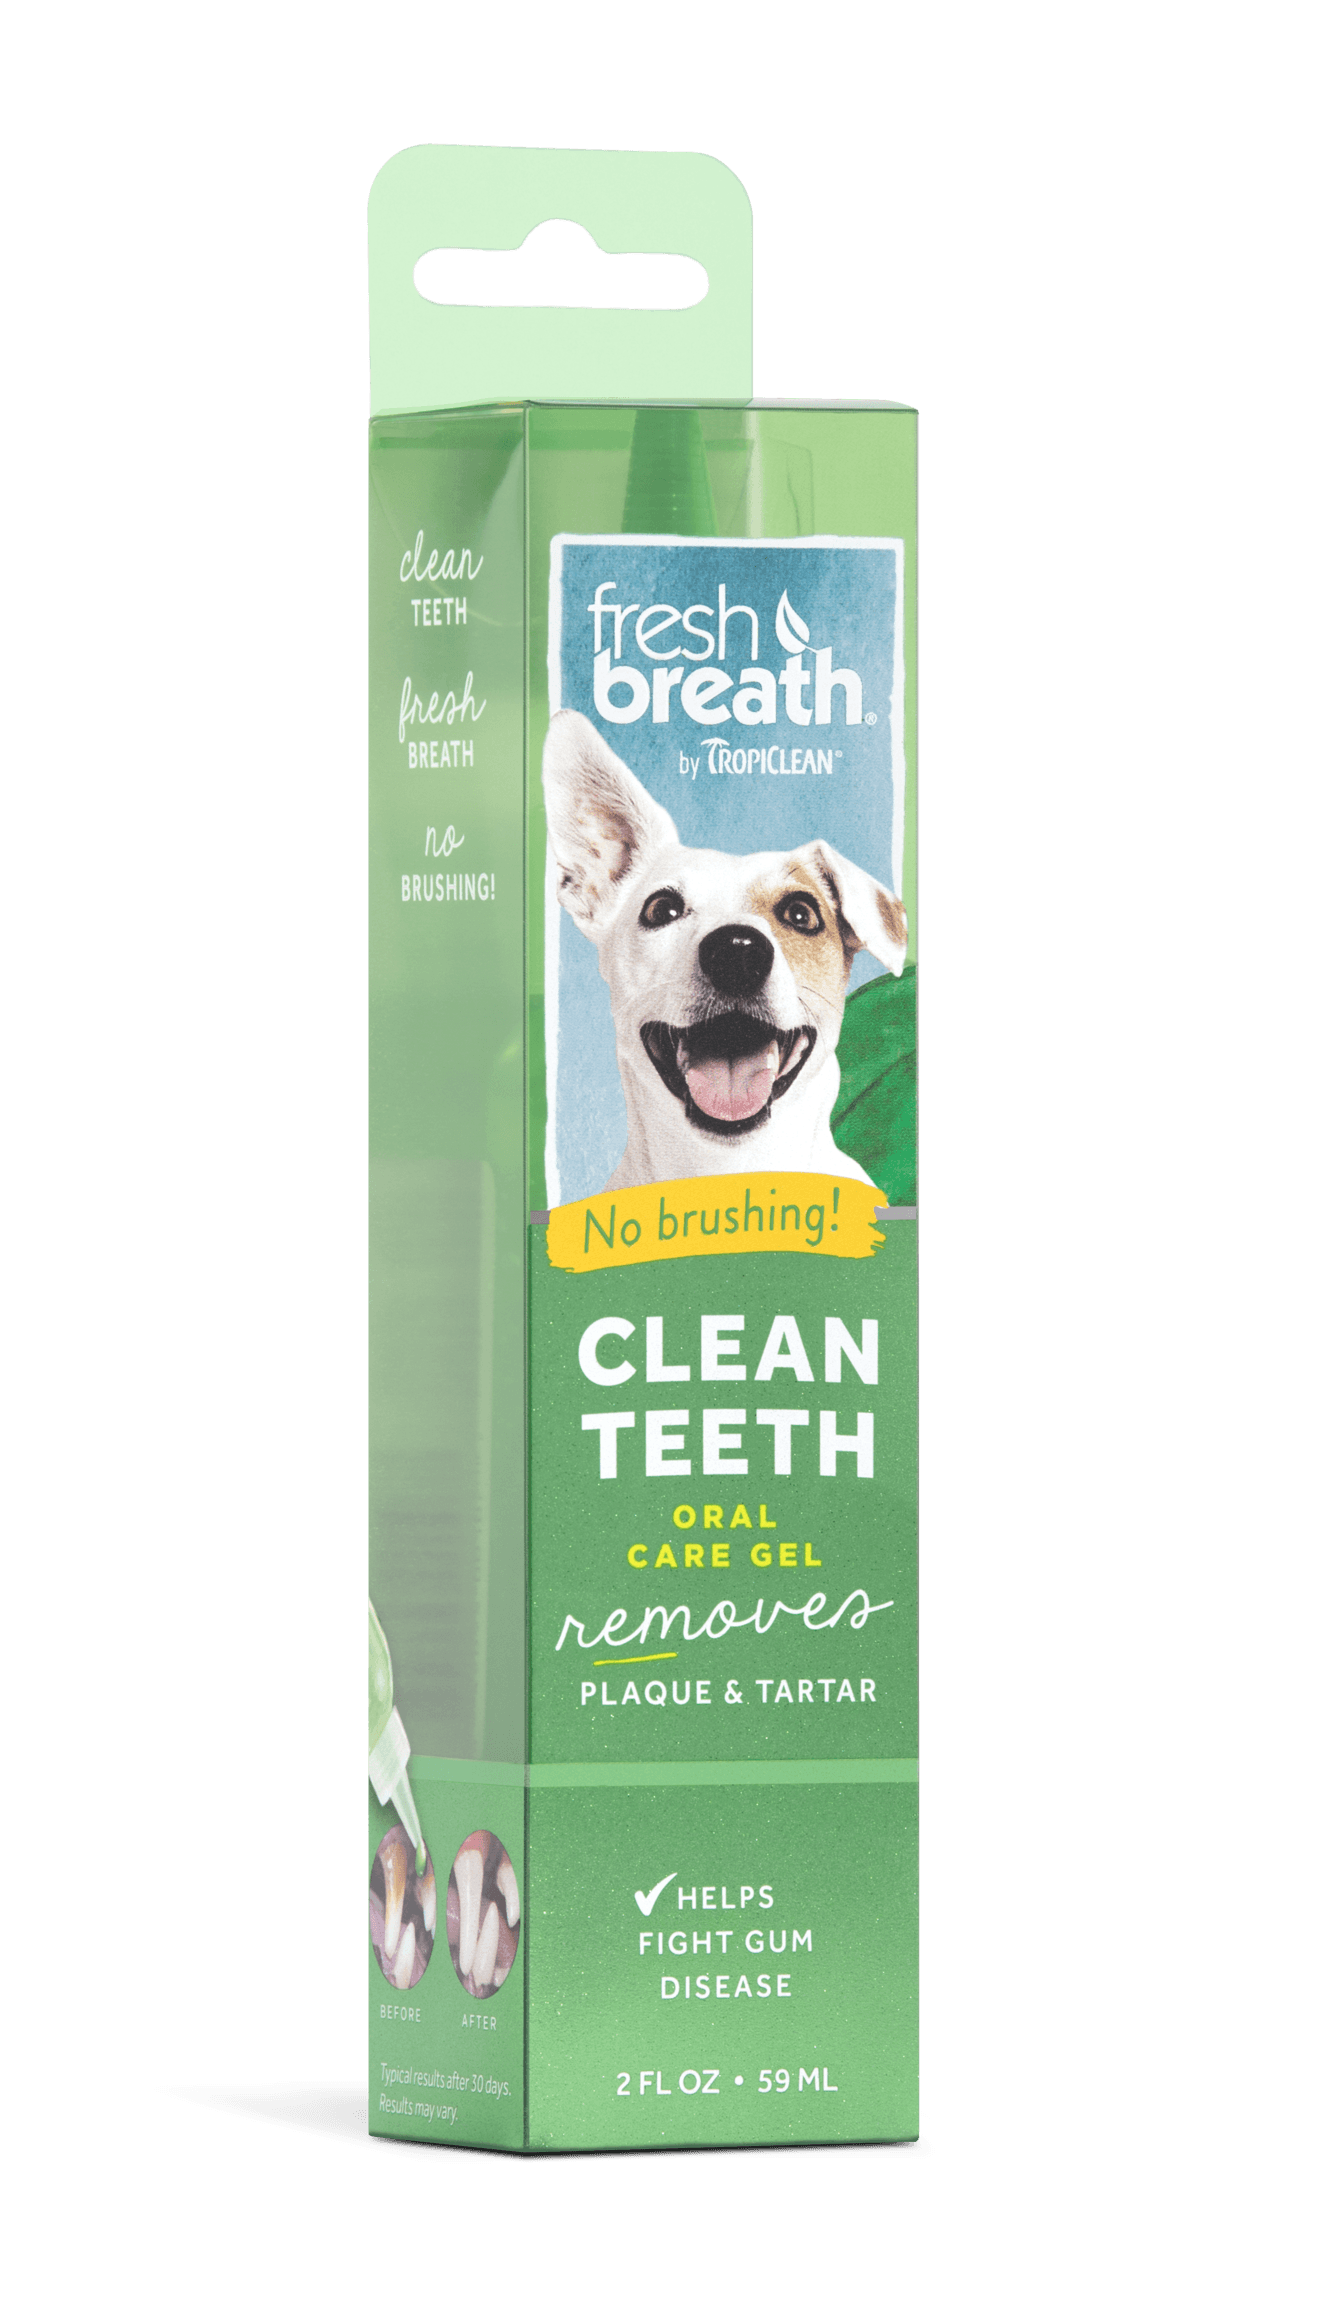 Gel đặc trị mảng bám, cao răng cho chó 